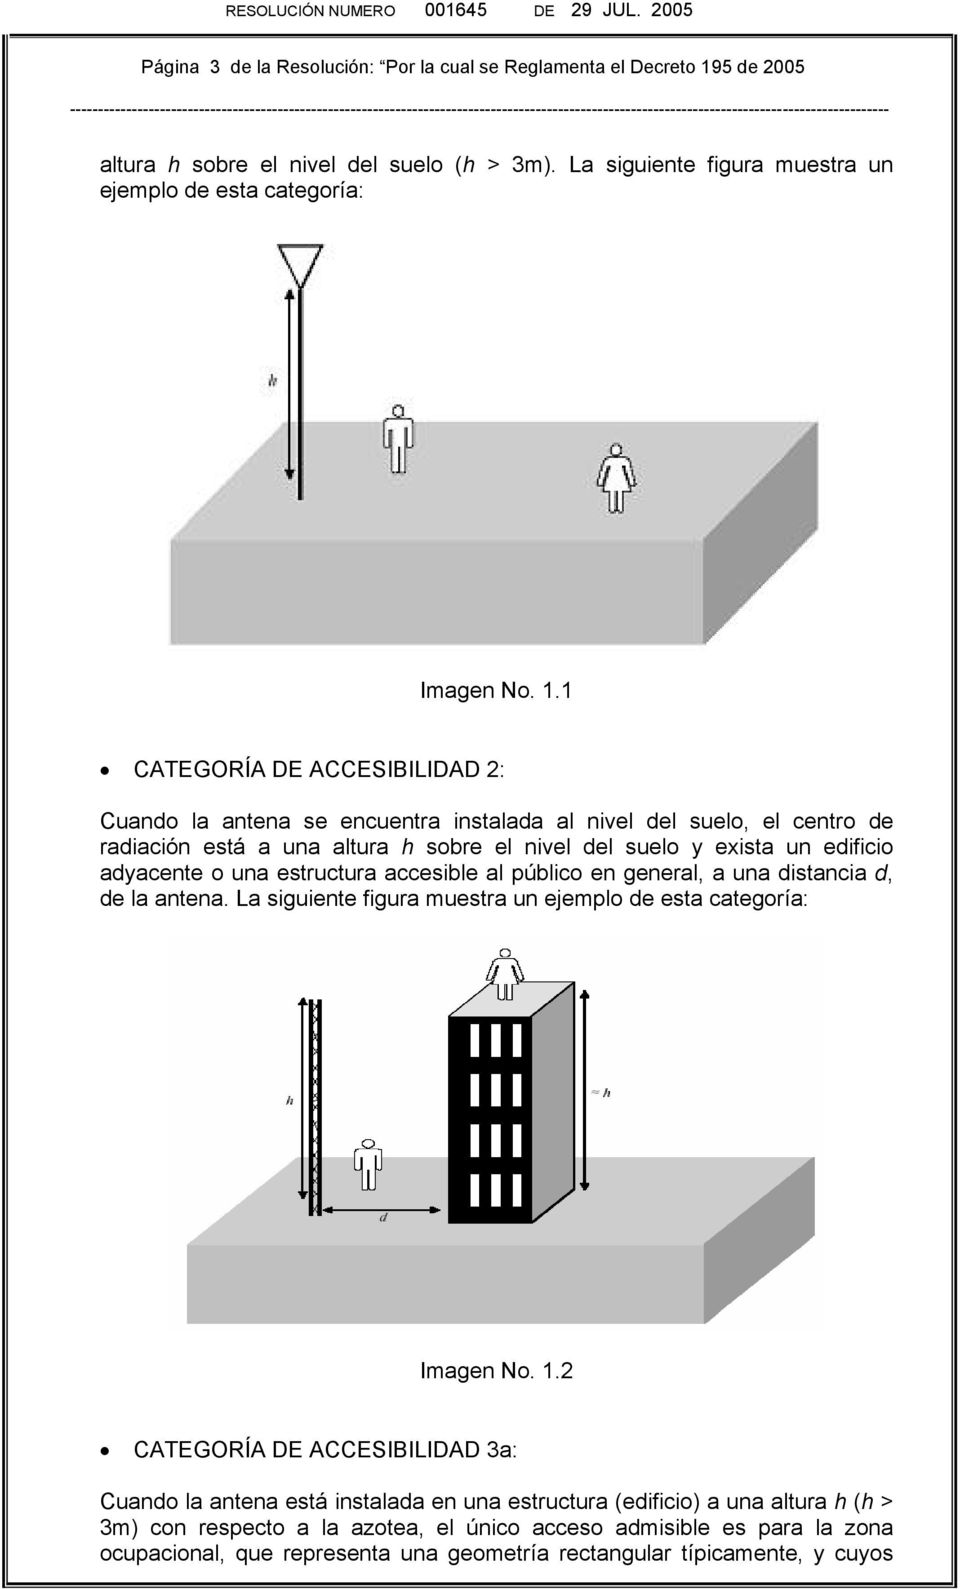 1 CATEGORÍA DE ACCEBILIDAD 2: Cuando la antena se encuentra instalada al nivel del suelo, el centro de radiación está a una altura h sobre el nivel del suelo y exista un edificio adyacente o una